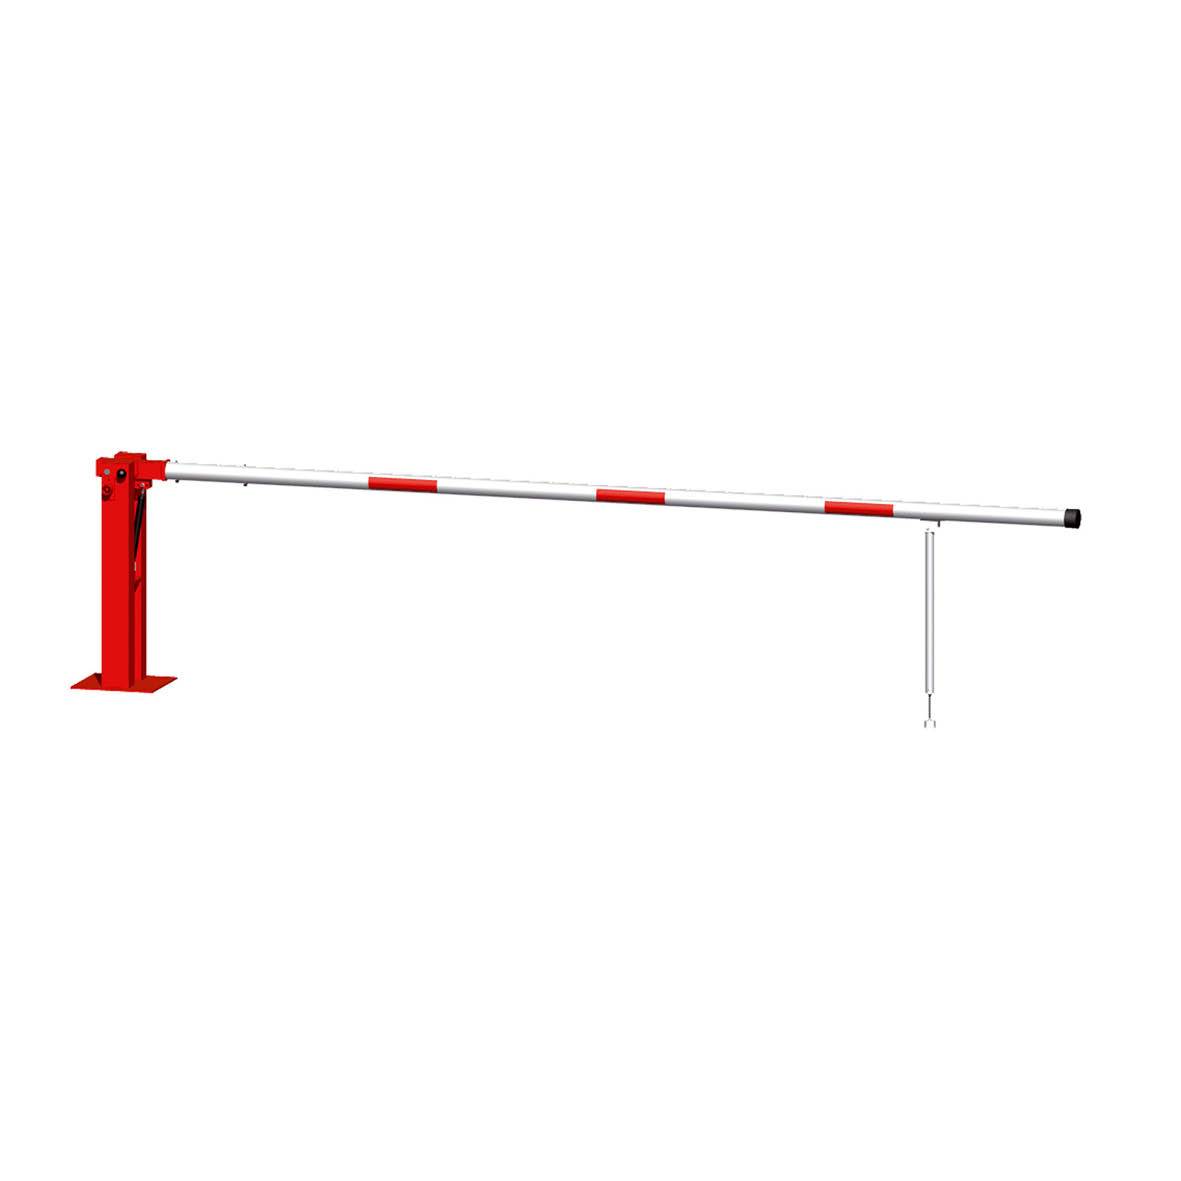 Handschranke Vorhängeschloss, mit Gasdruckfeder und Pendelstütze, 500 cm, verzinkt, rot-weiss, 51 kg